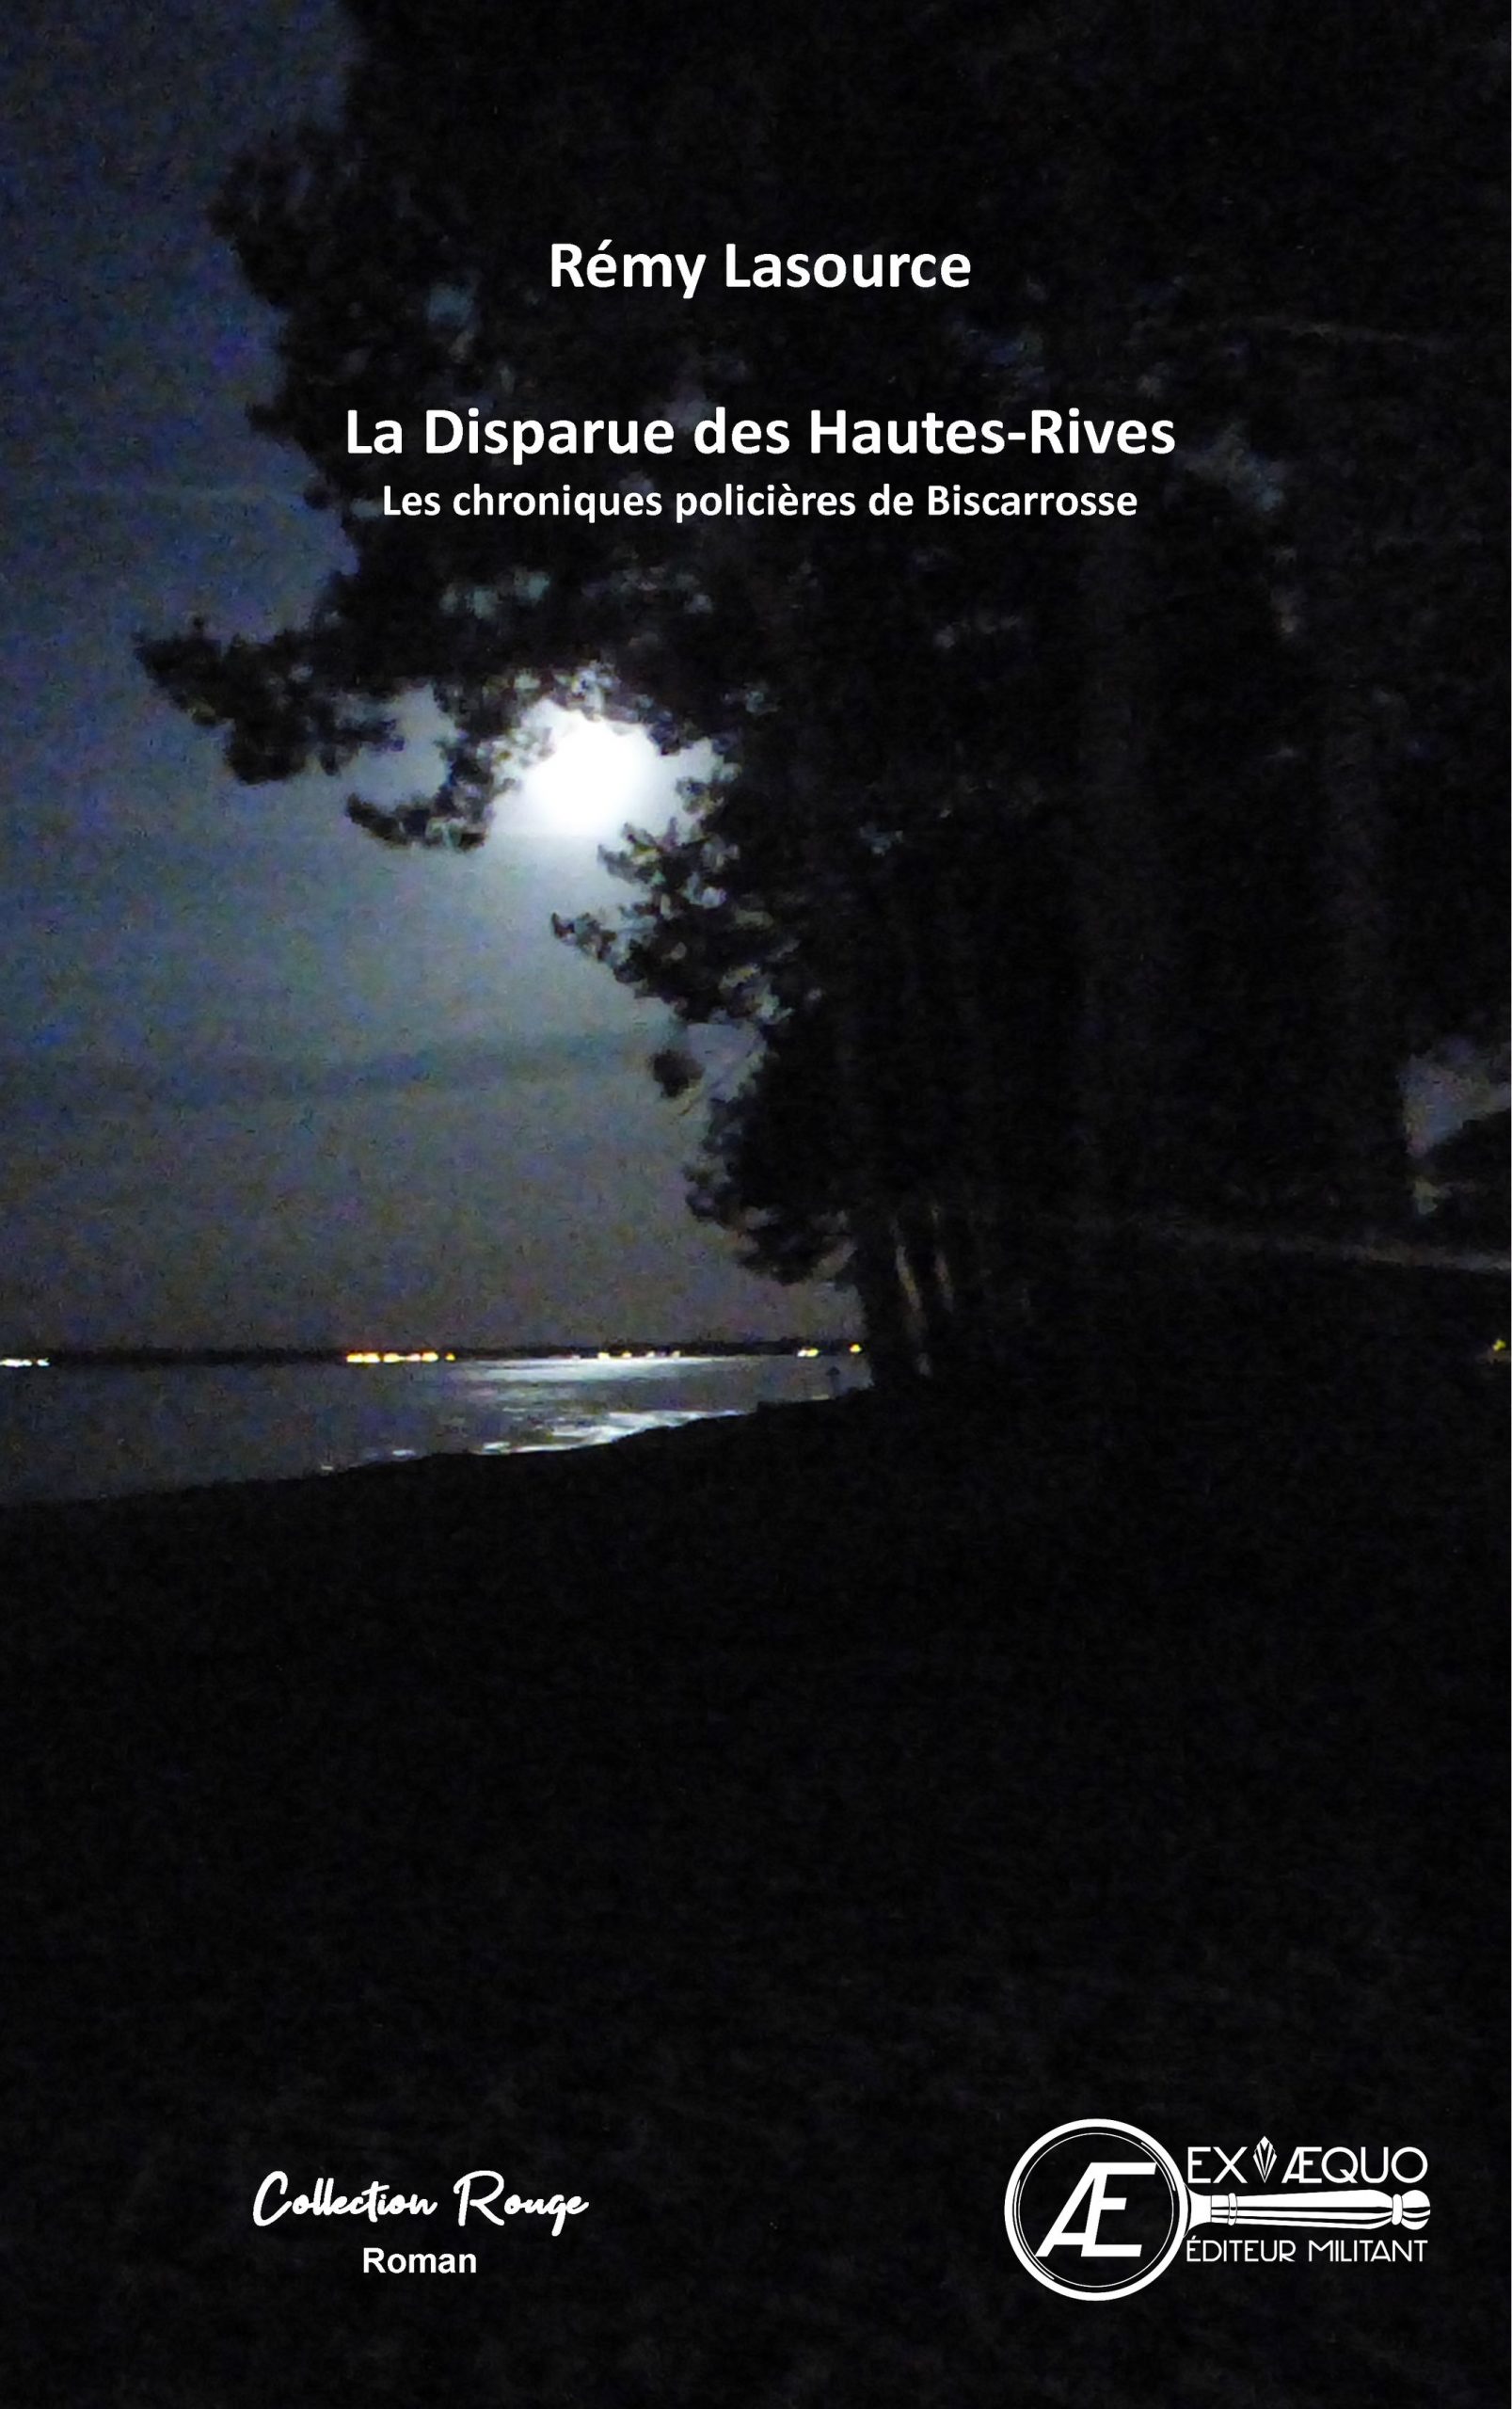 You are currently viewing La disparue des hautes rives, de Rémy Lasource